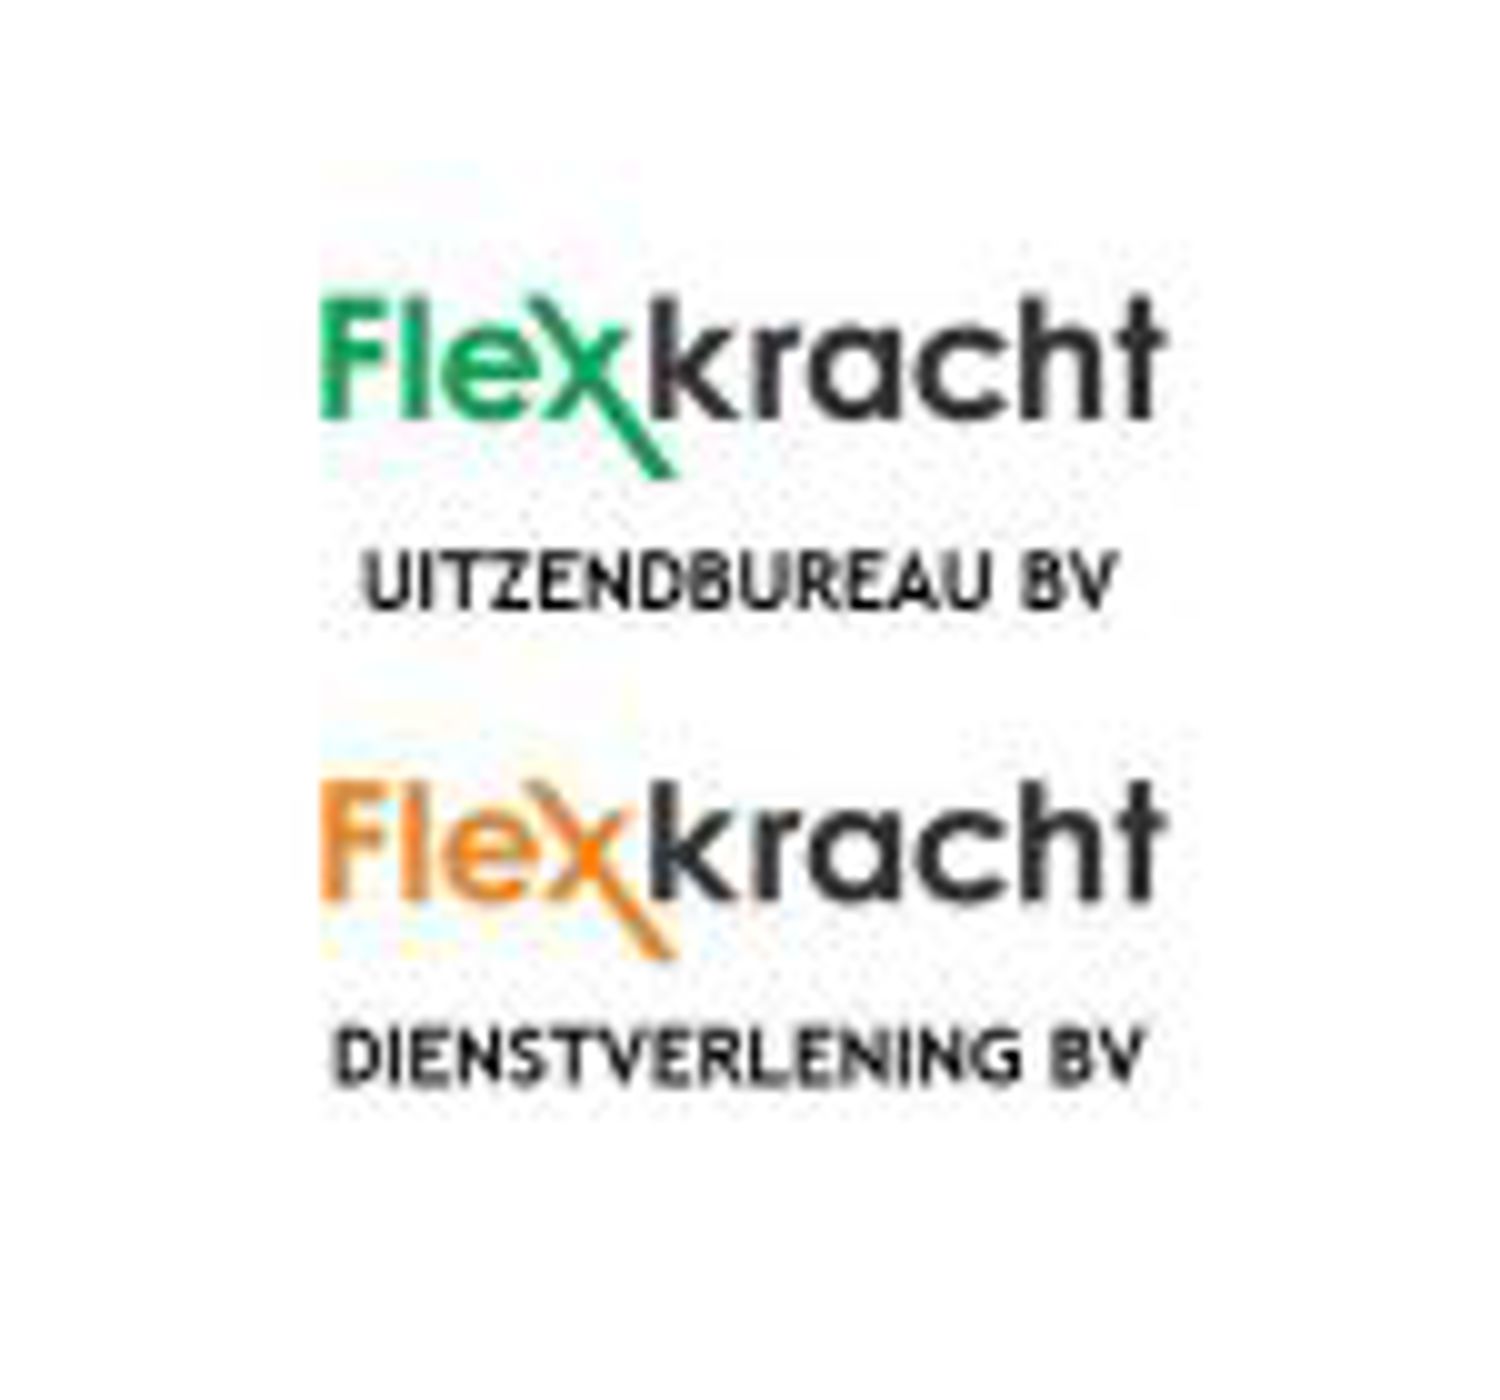 Logo Uitzendbureau Flexkrachtgroep